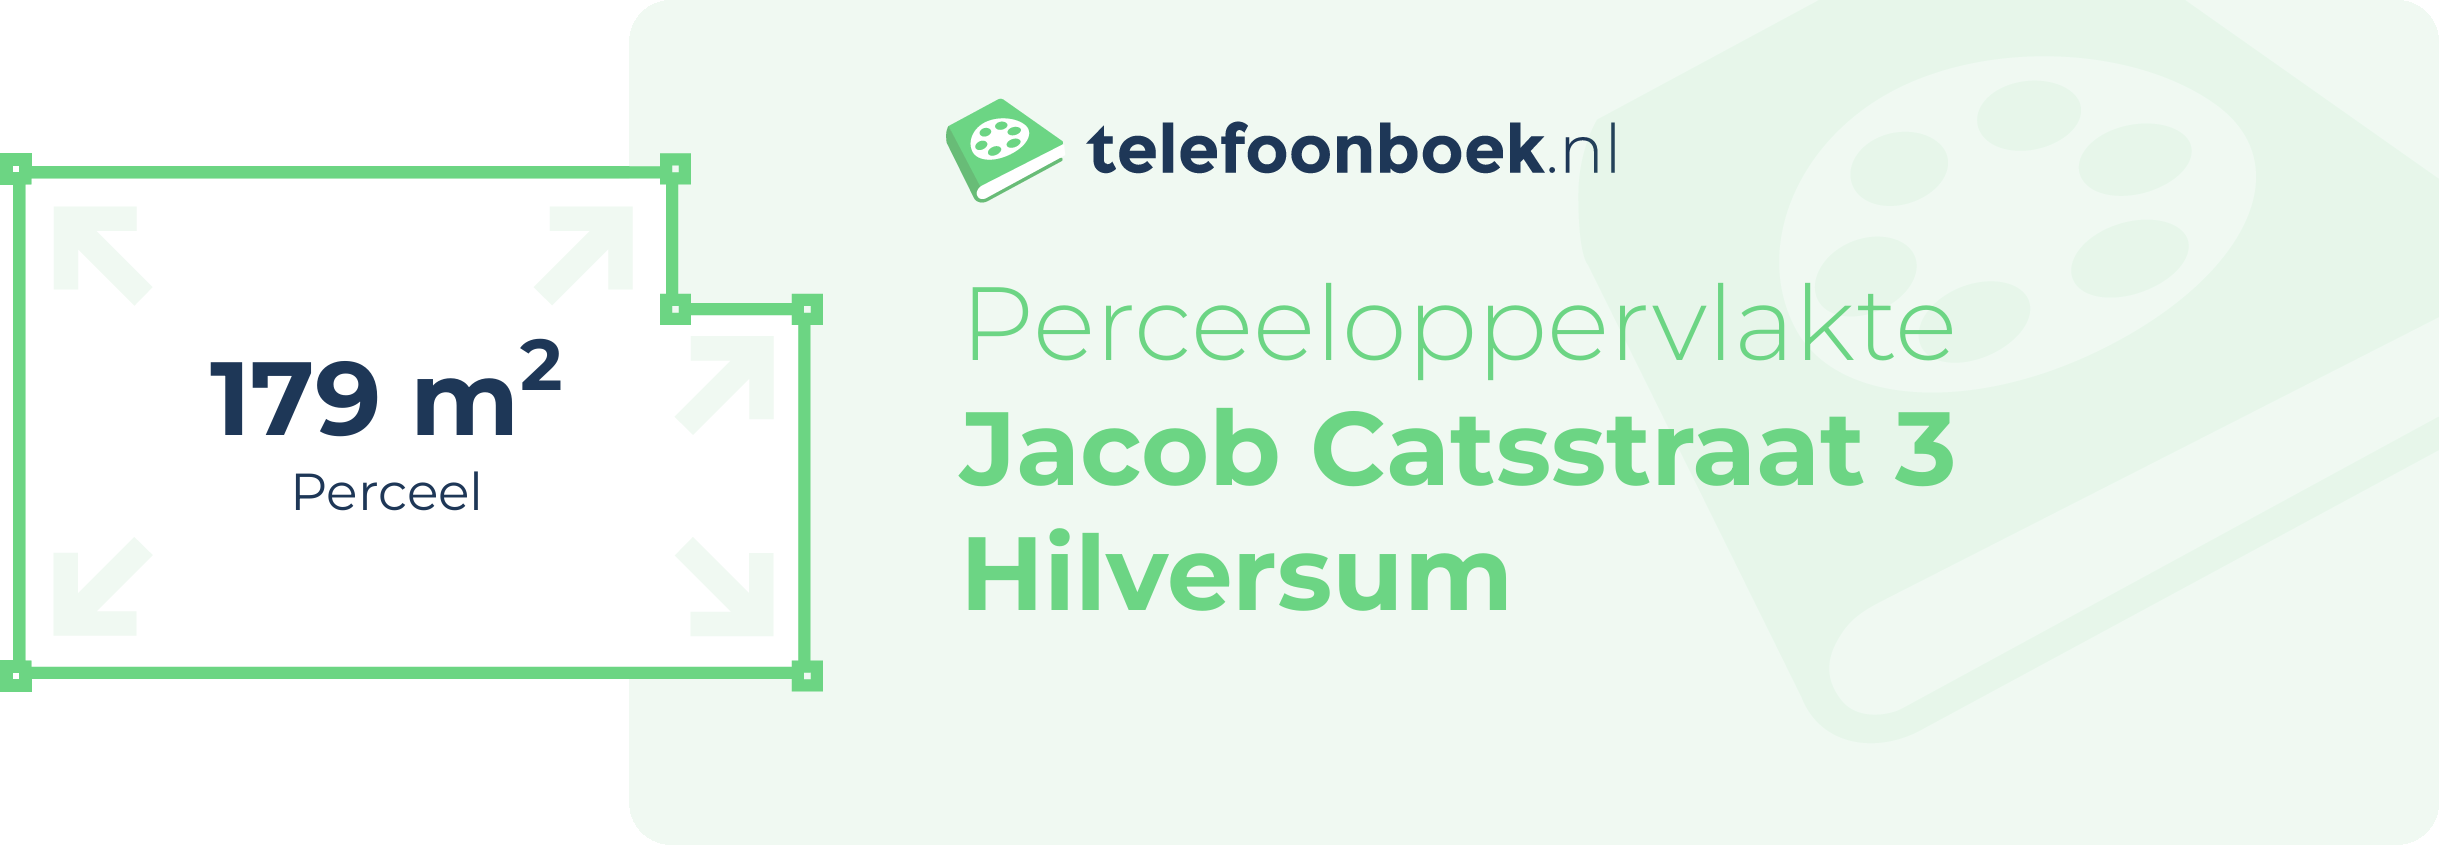 Perceeloppervlakte Jacob Catsstraat 3 Hilversum